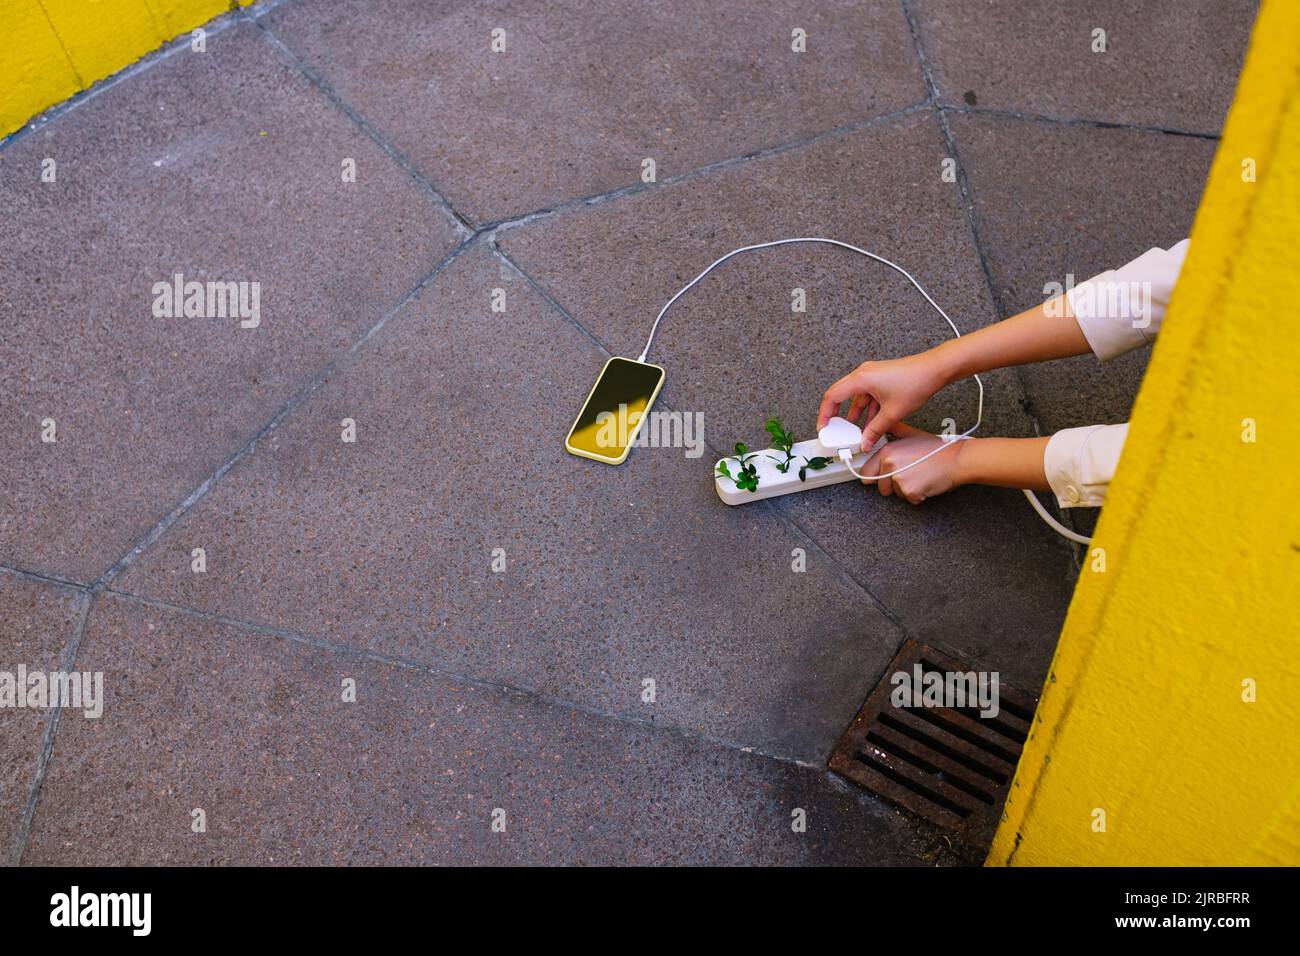 Hände einer jungen Frau, die das Handy mit einer Steckdose und Pflanzen auf dem Boden lädt Stockfoto